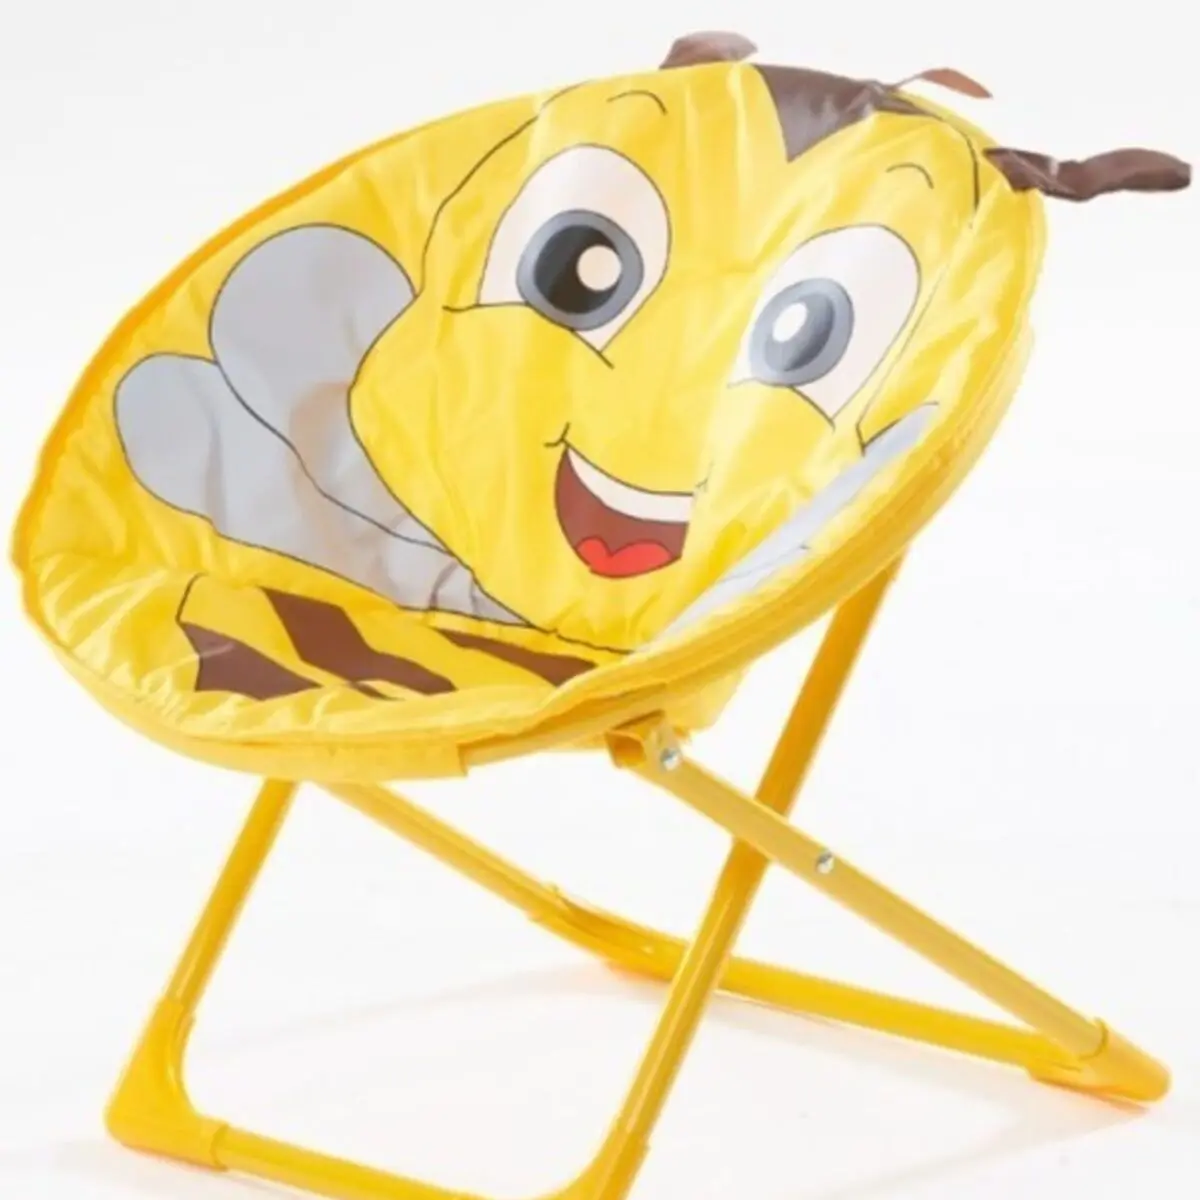 Tanio Krzesło dziecięce księżycowe stołek dziecięcy krzesełko dla dziecka składane sklep